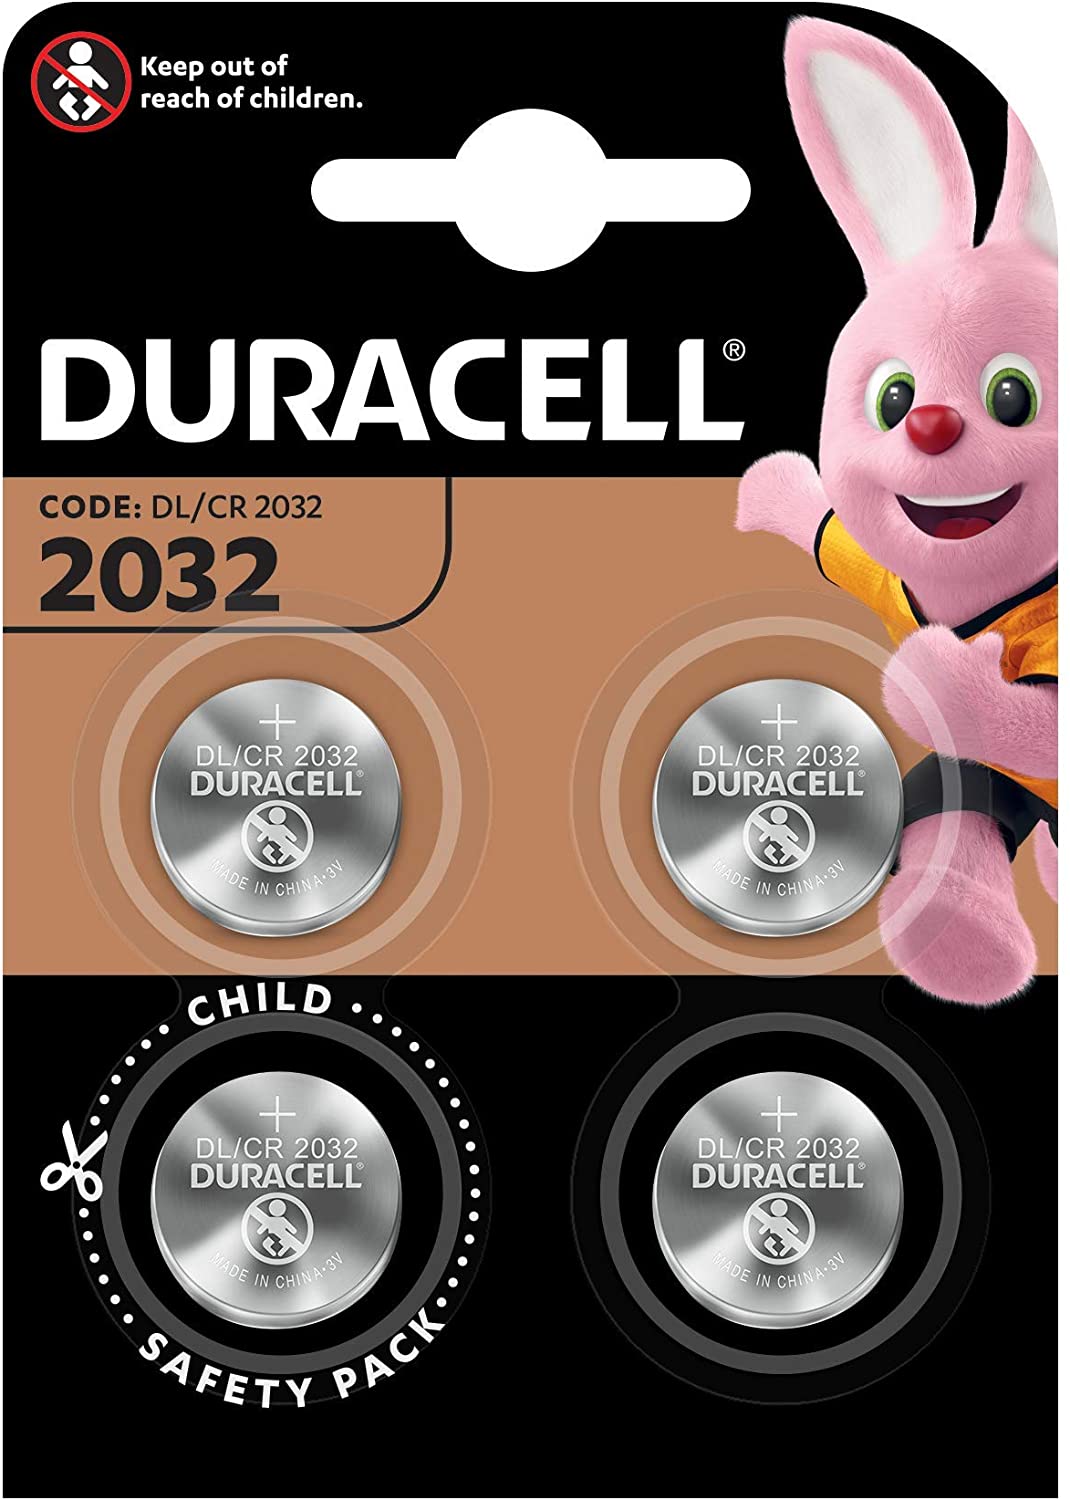 Duracell DL2032/CR2032 Batteria Bottone Litio 3 V, Specialistica Elettronica, Confezione da 4, Progettate per l'Uso su Chiavi con Sensore Magnetico, Bilance, Elementi Indossabili e Dispositivi Medici